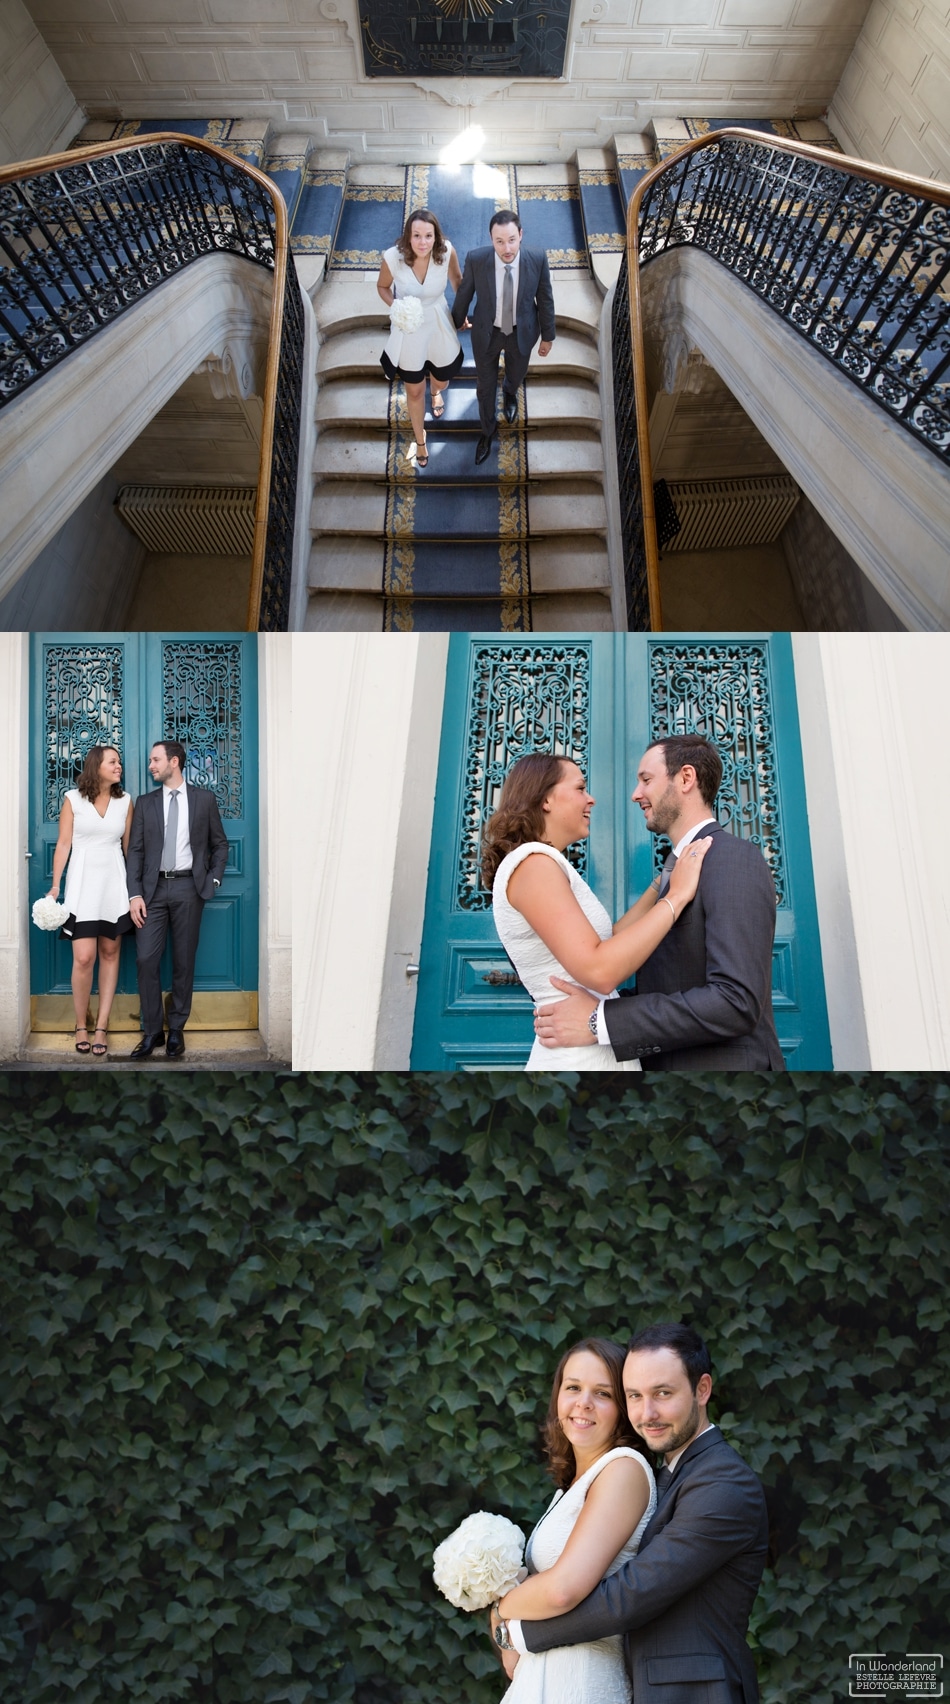 Mariage civil photos de couple dans le Mariais à Paris